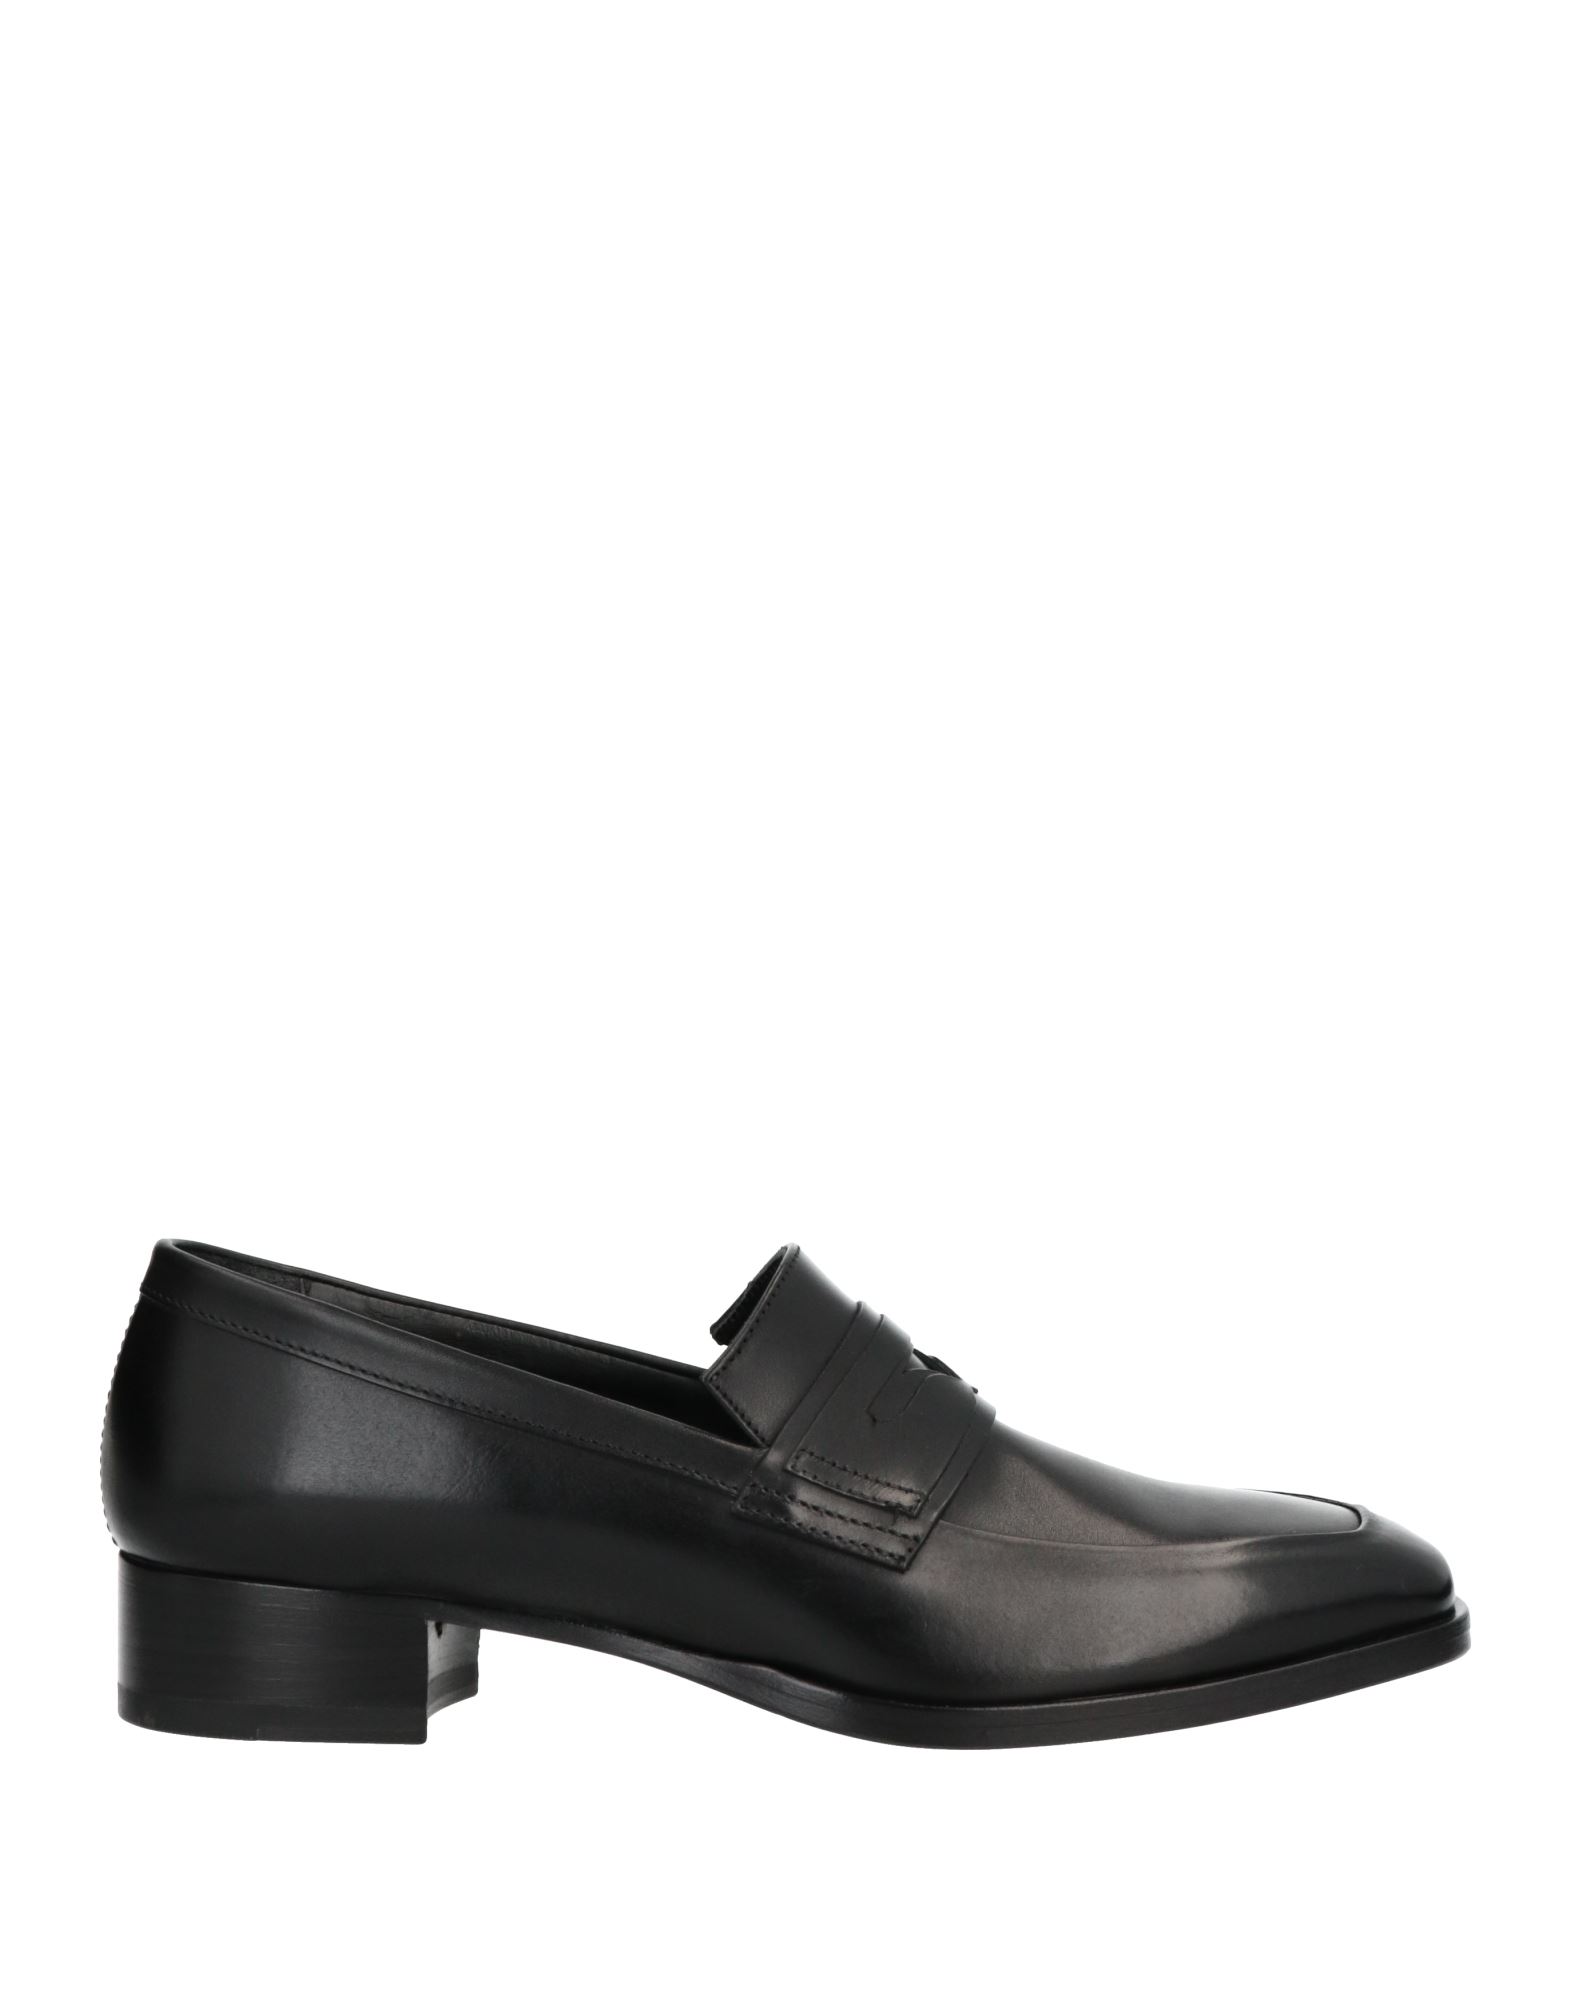 Alberto Fasciani Loafers In Black